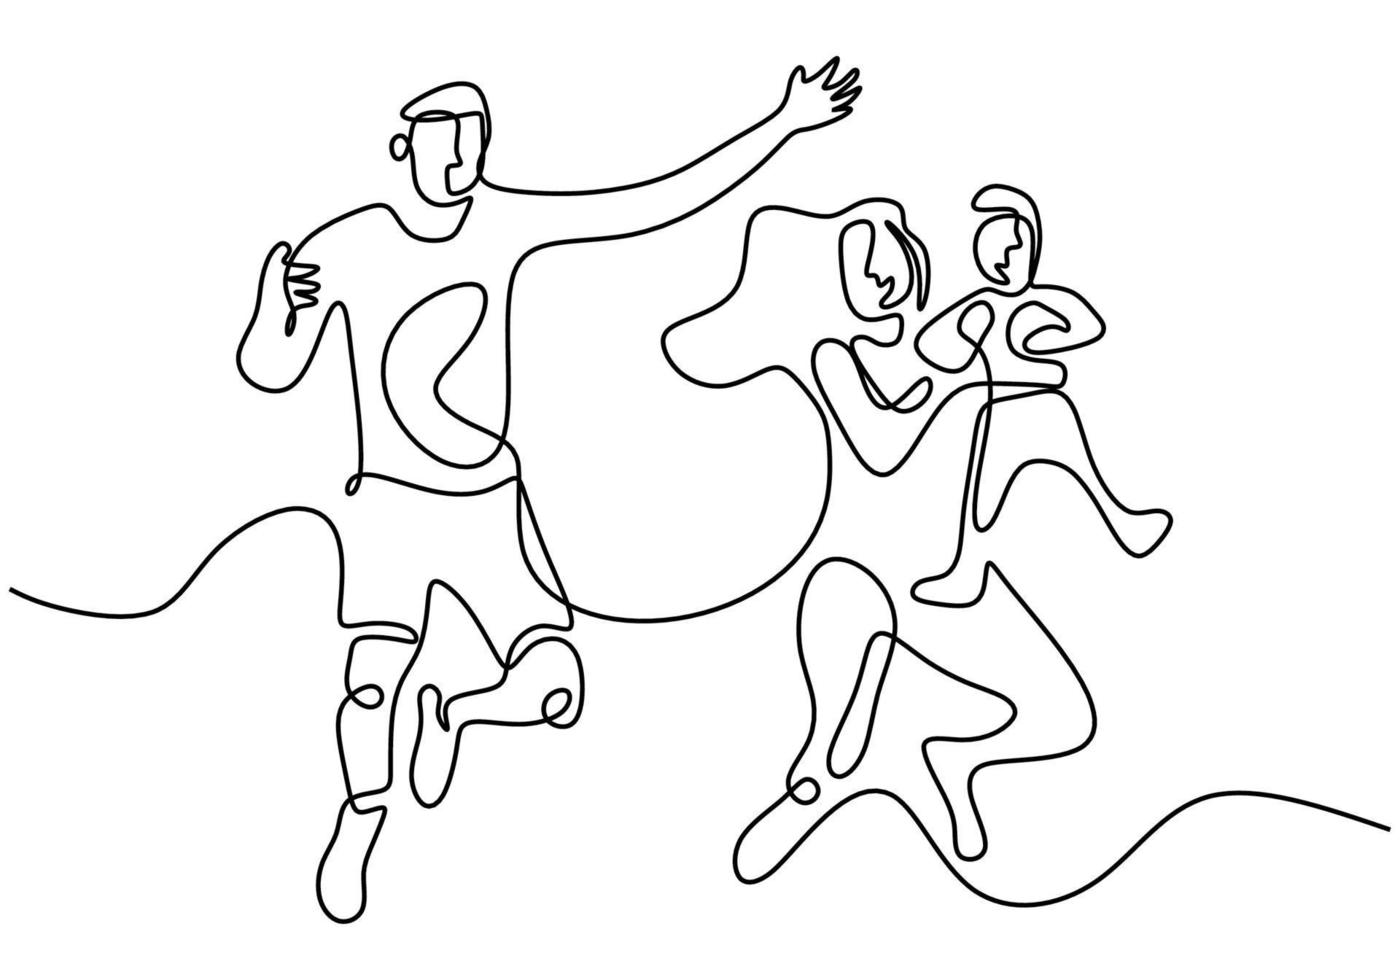 Contínuo um desenho de linha de pai de família feliz, mãe e filho brincando e pulando juntos para expressar sua felicidade. conceito de parentalidade de família feliz. ilustração vetorial vetor